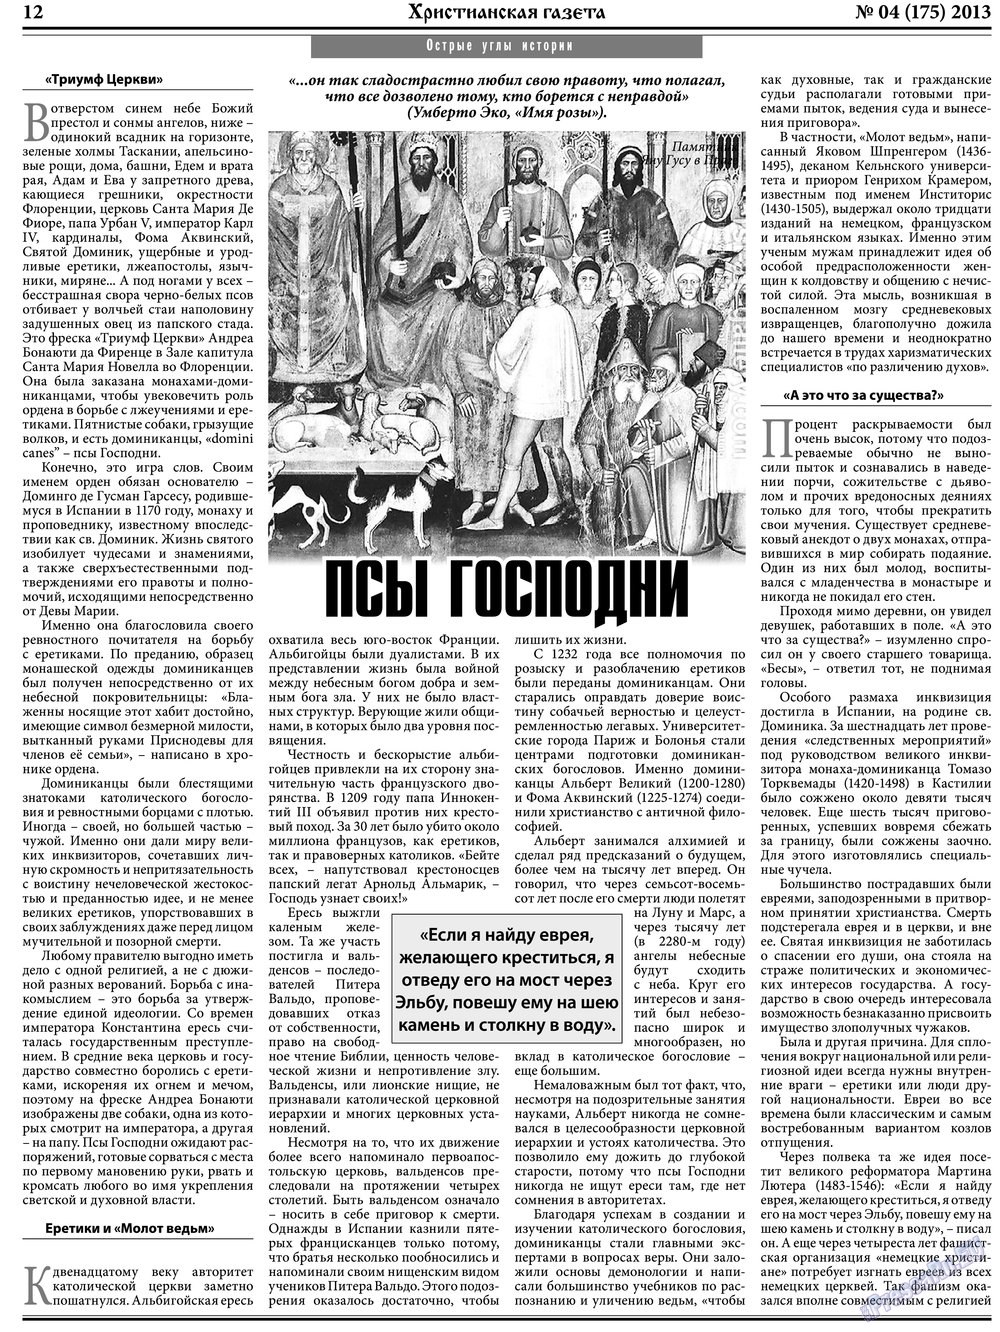 Христианская газета, газета. 2013 №4 стр.12